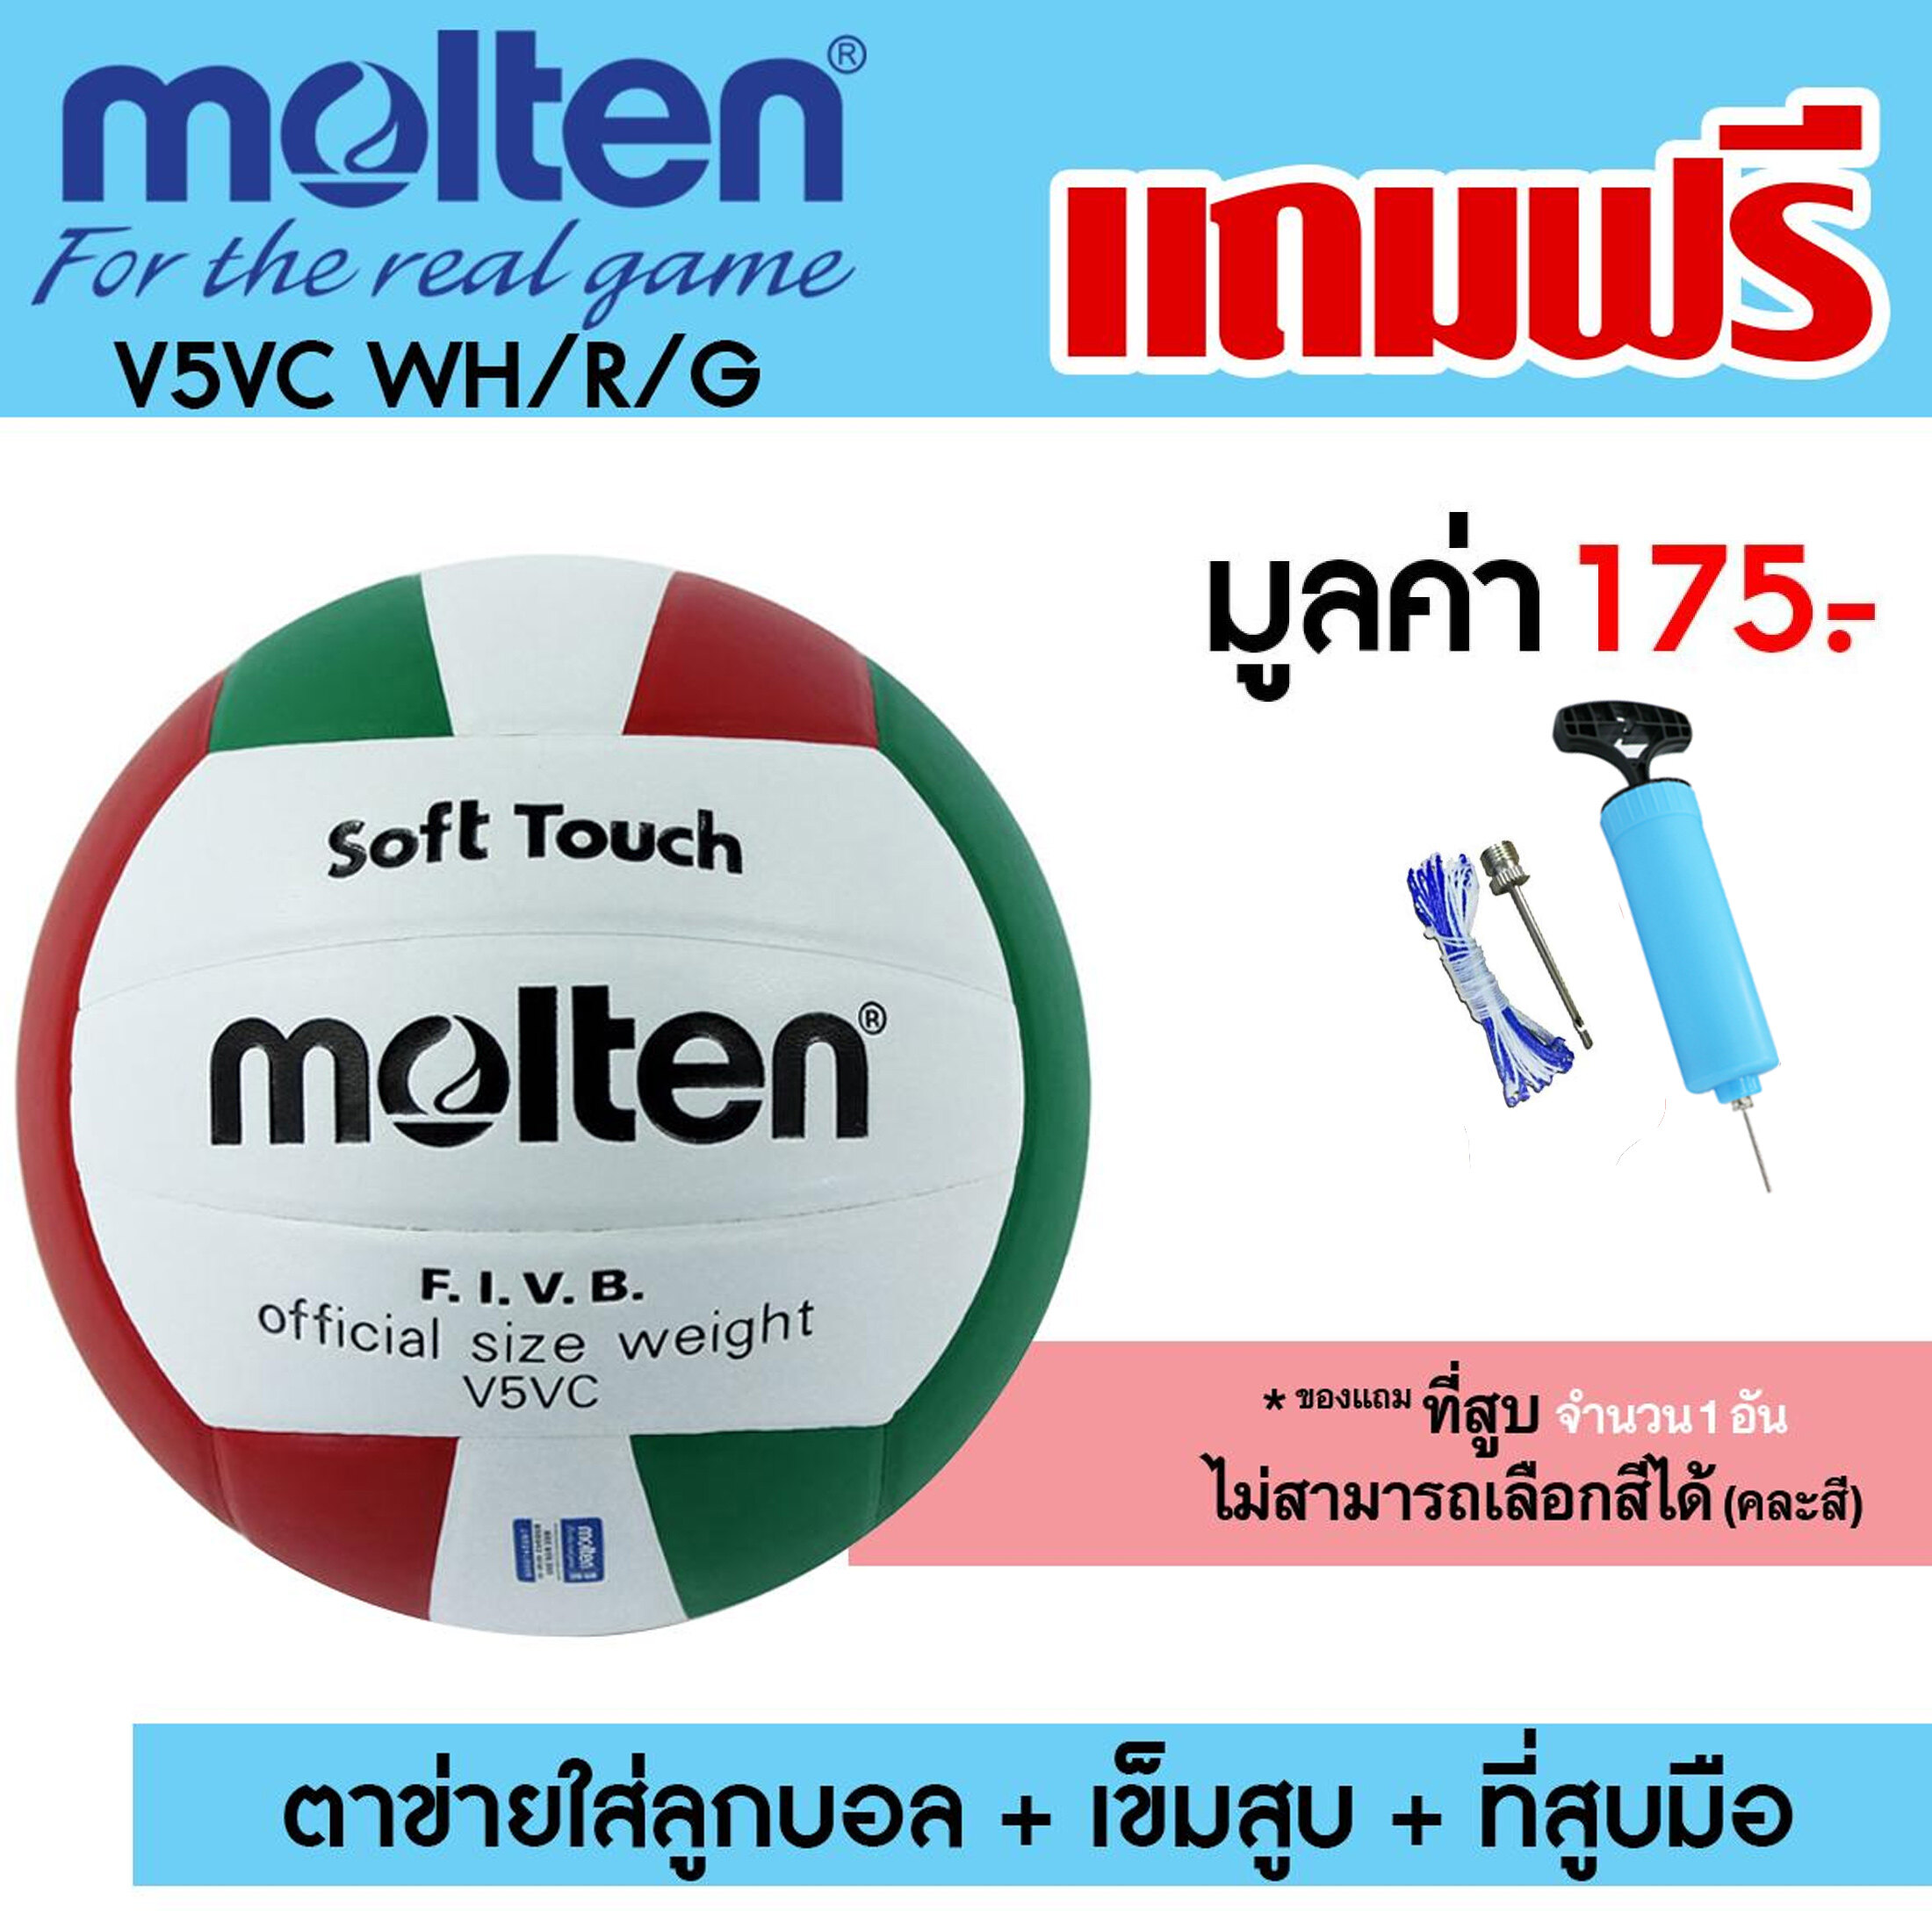 MOLTEN วอลเลย์บอล หนังอัด มอลเทน Volley ball PVC V5VC WH/R/G แถมฟรี ตาข่ายใส่ลูกวอลเลย์บอล + เข็มสูบสูบลม + สูบมือ SPL